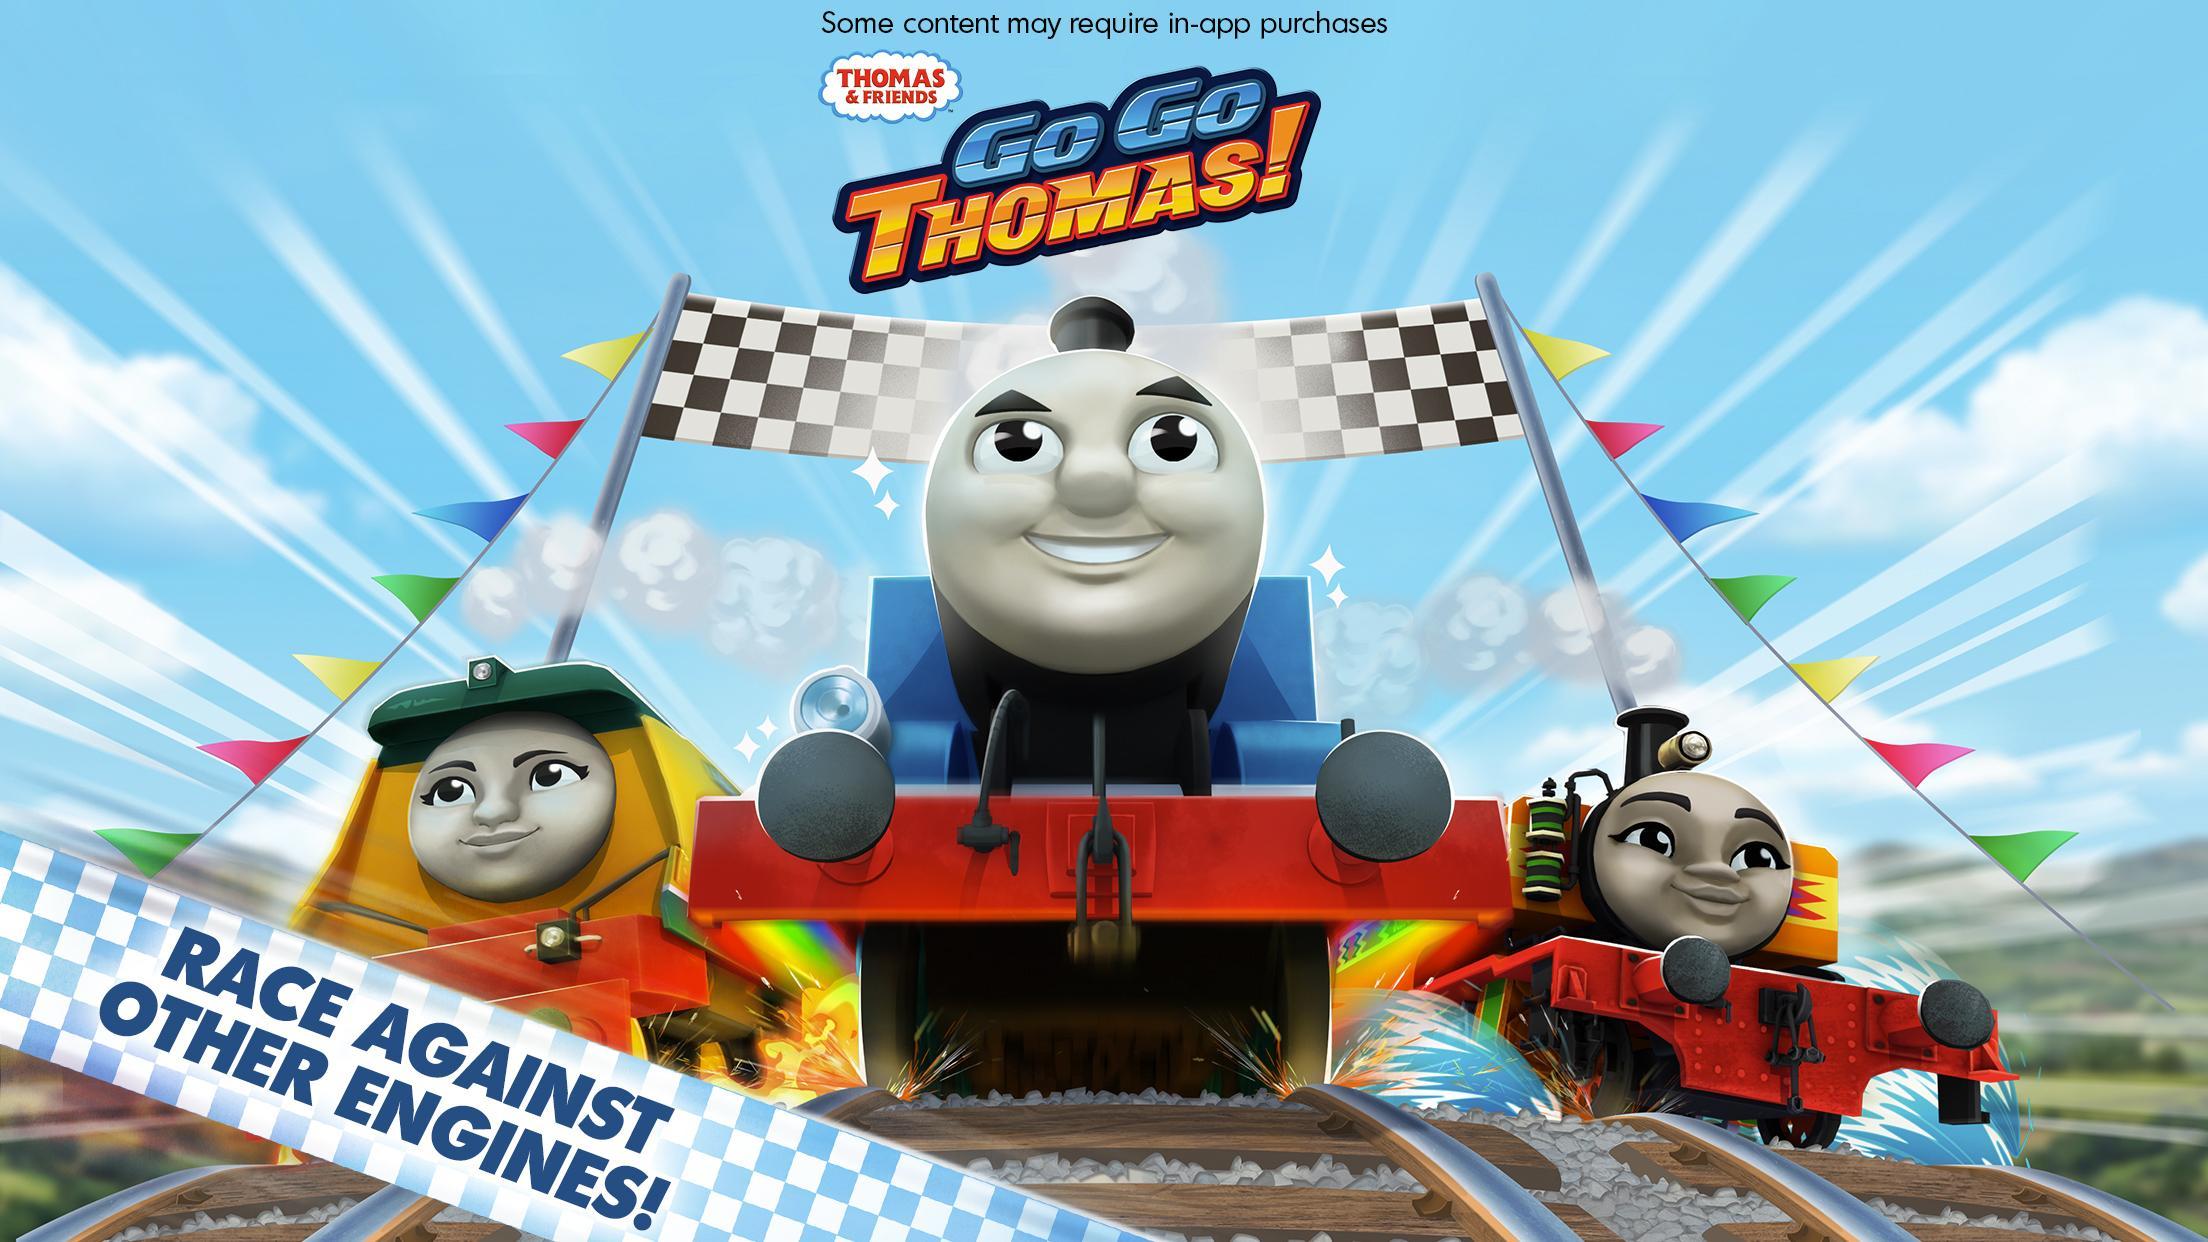 Tom go to shop. Thomas and friends go go Thomas.